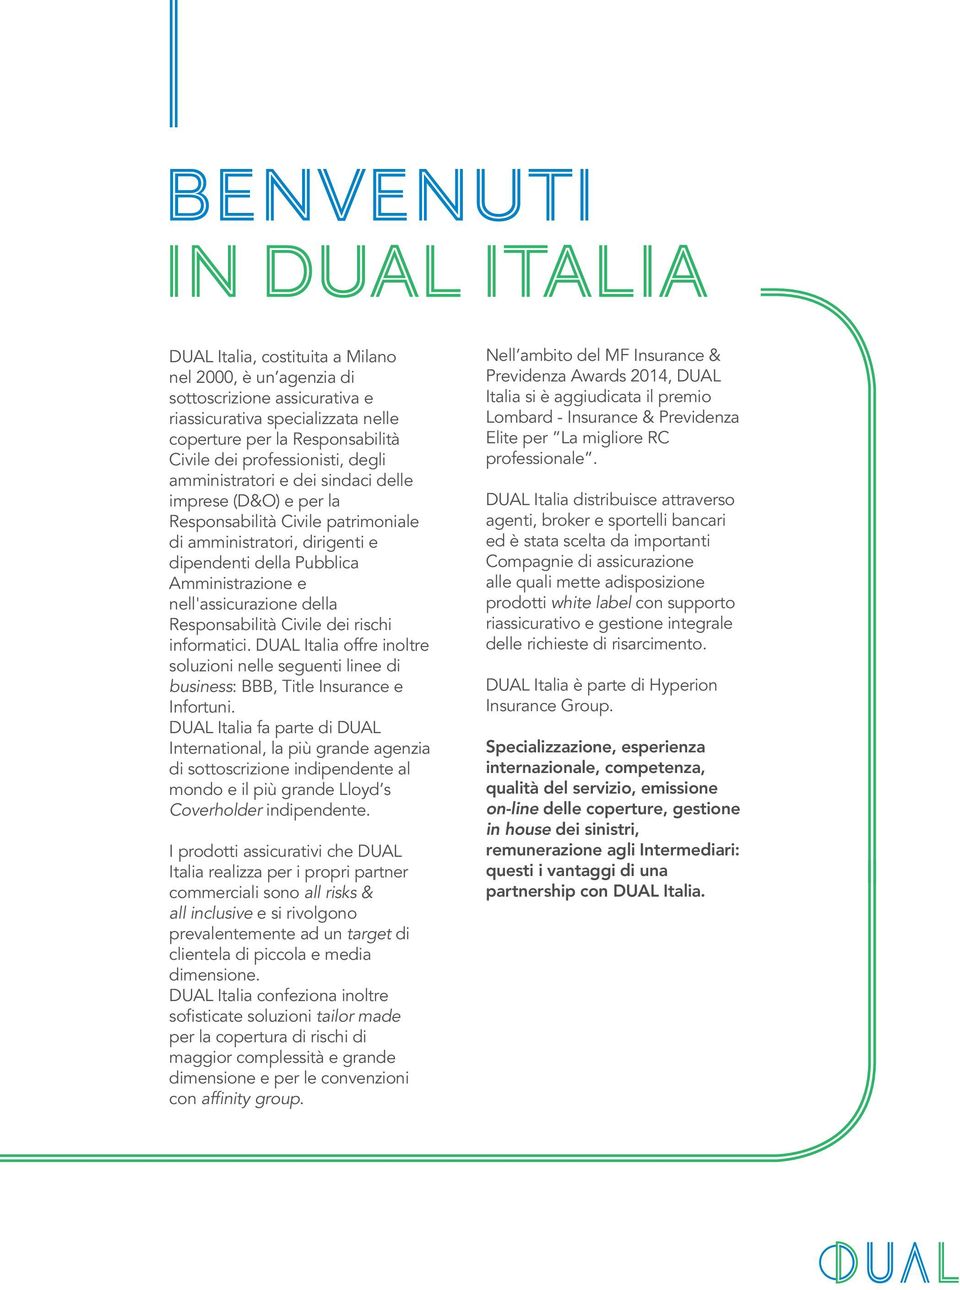 Responsabilità Civile dei rischi informatici. DUAL Italia offre inoltre soluzioni nelle seguenti linee di business: BBB, Title Insurance e Infortuni.